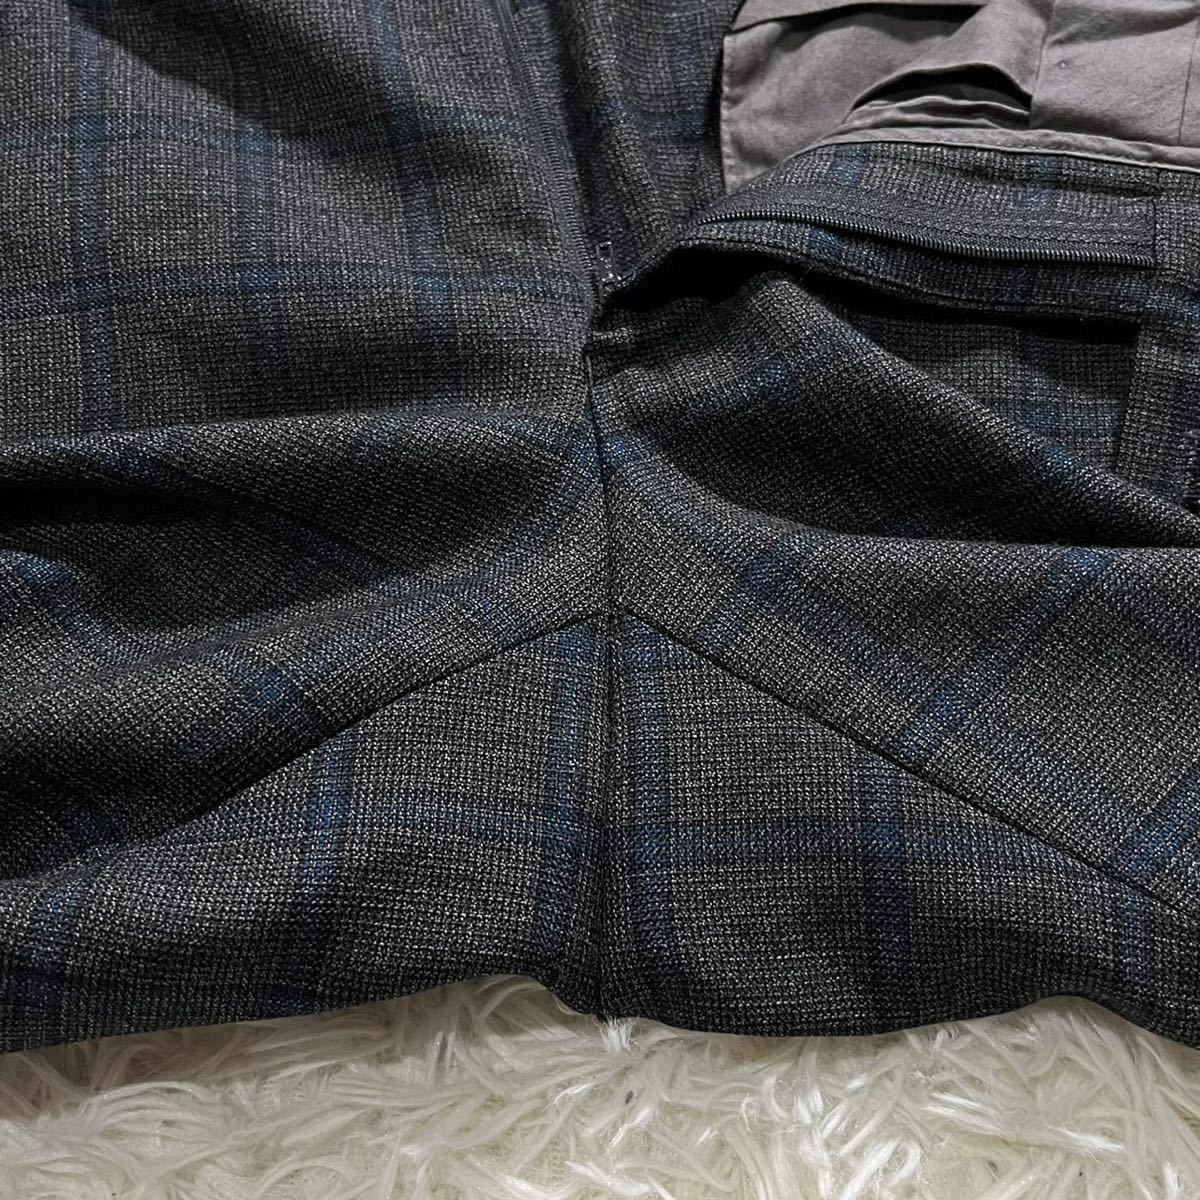 極美品! UNITED ARROWS『魅惑のチェック柄』ユナイテッドアローズ スーツ セットアップ テーラードジャケット パンツ グレー メンズ 46 M_画像8